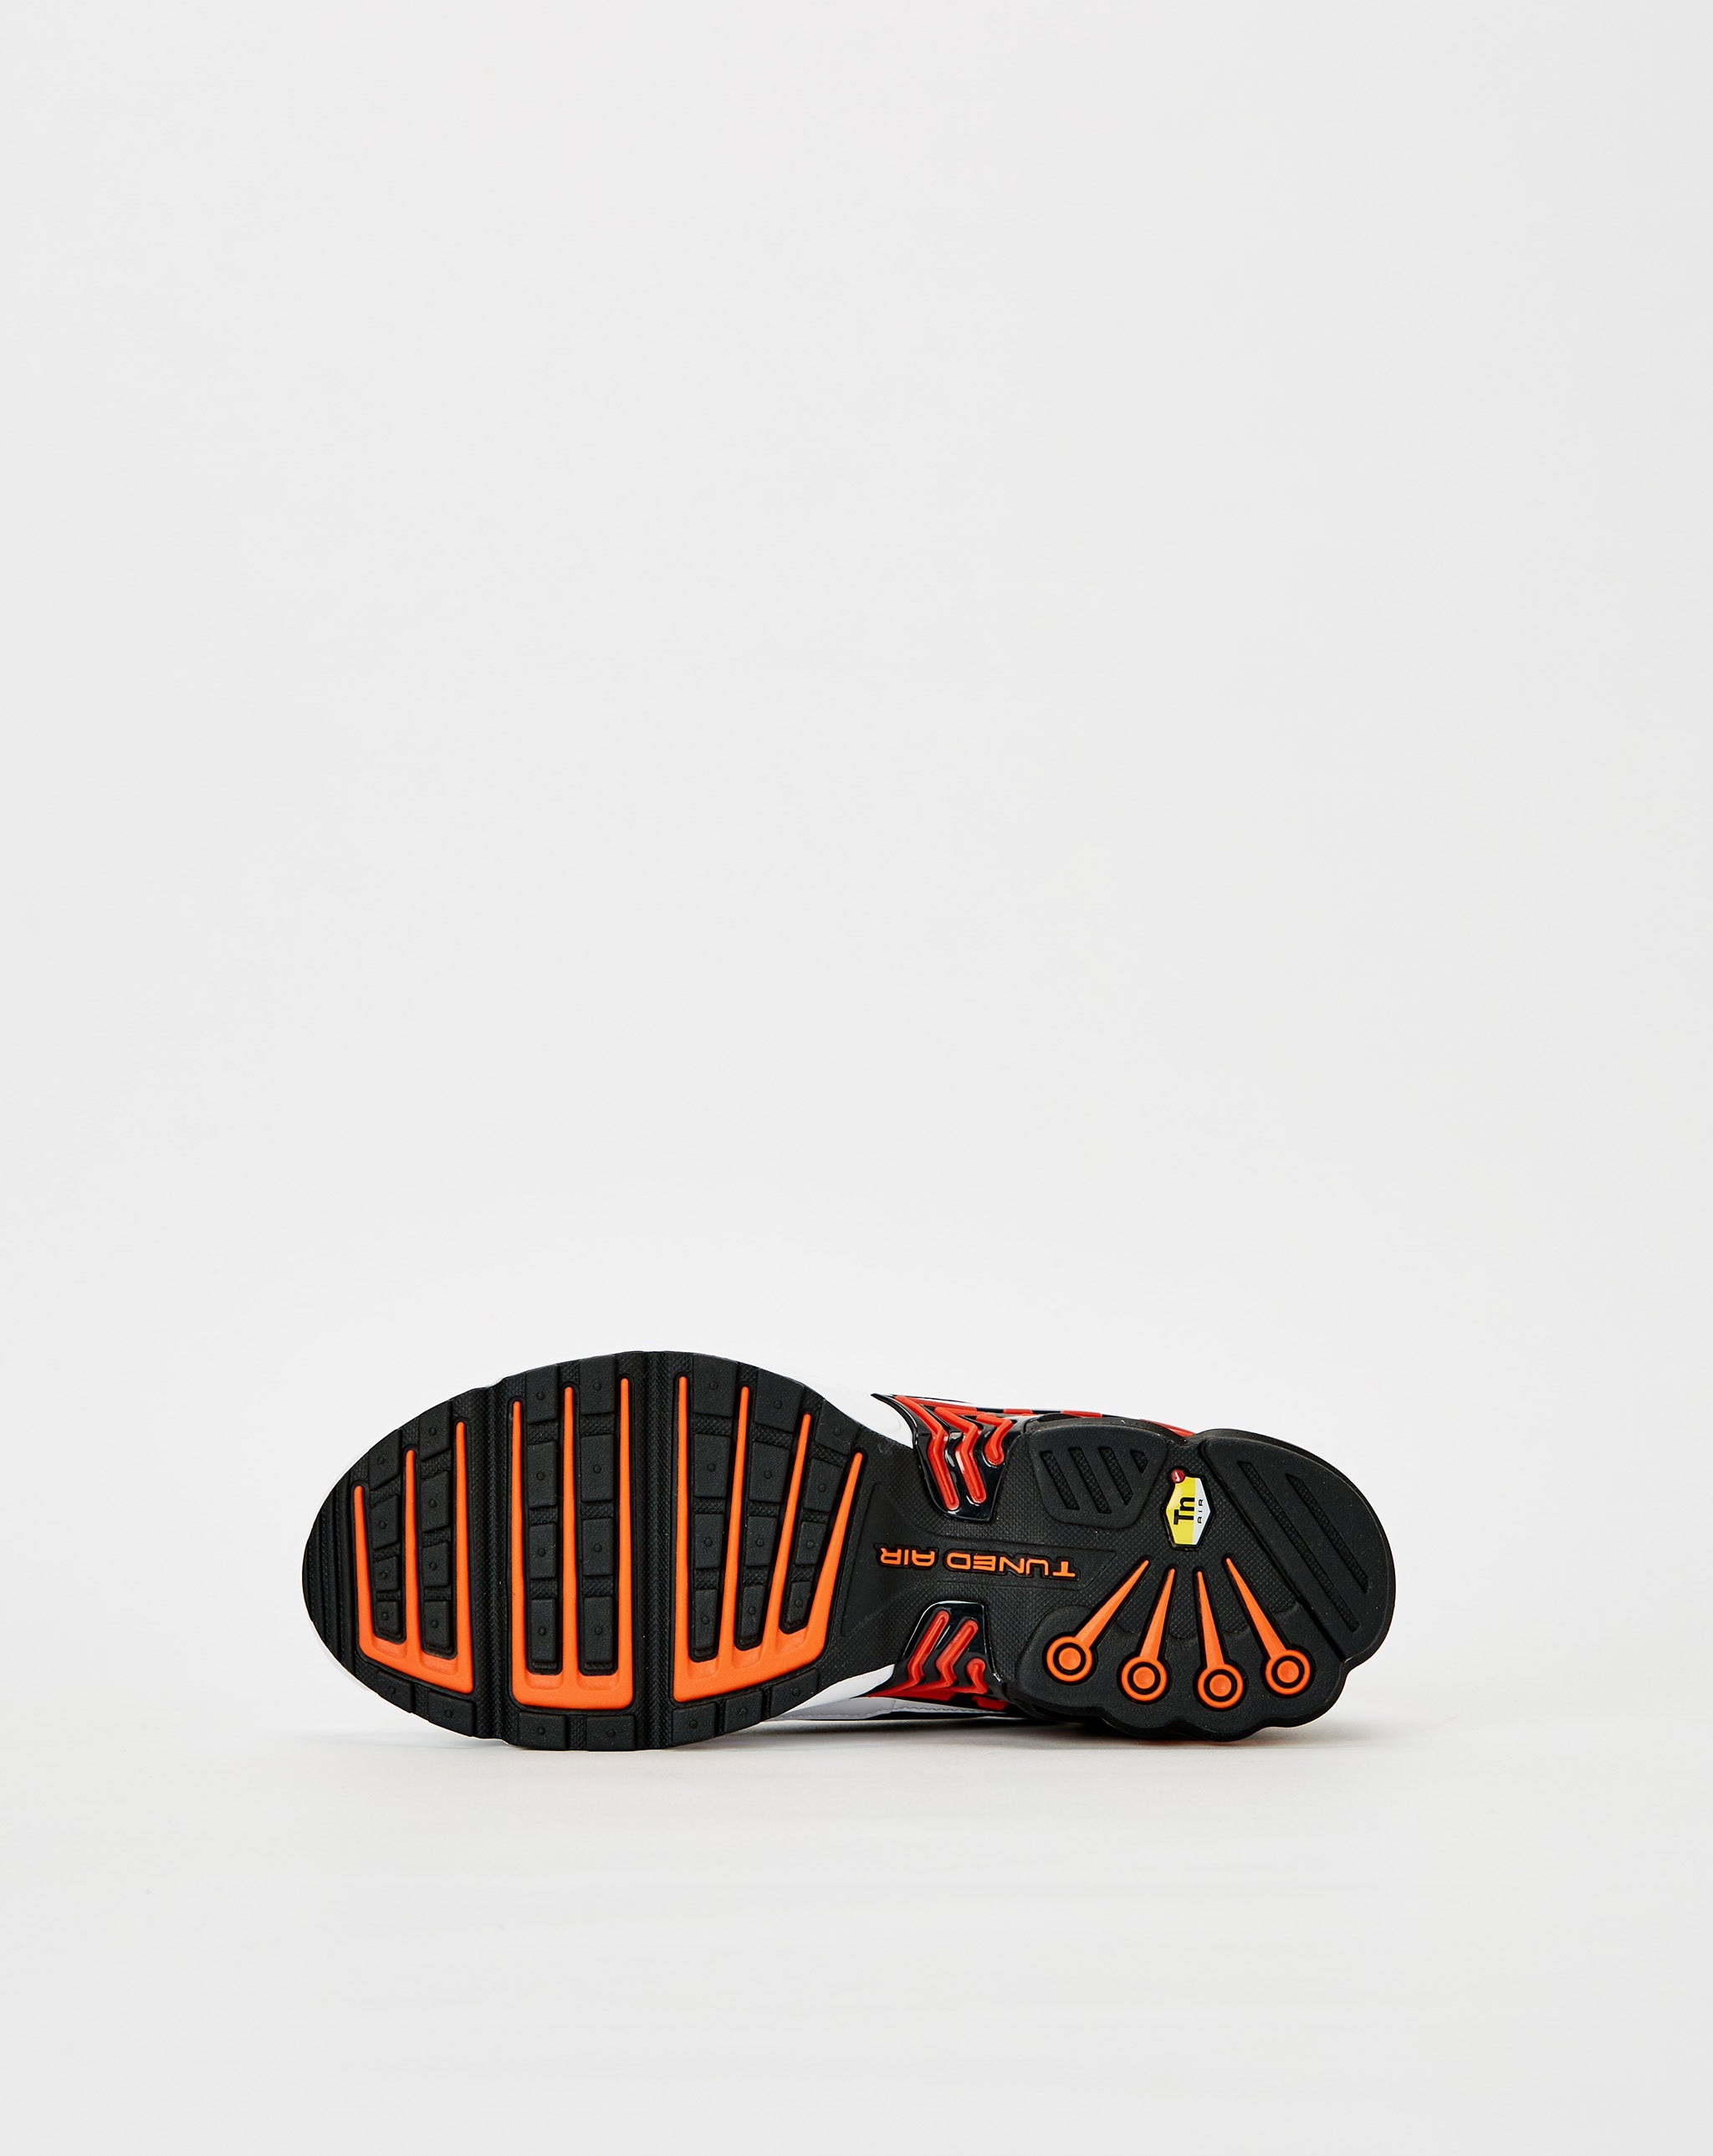 Nike Nike Kyrie II 2 Irving Effect Tie Dye Men Shoes Basketball Sneakers 819583-901  - Cheap Urlfreeze Jordan outlet